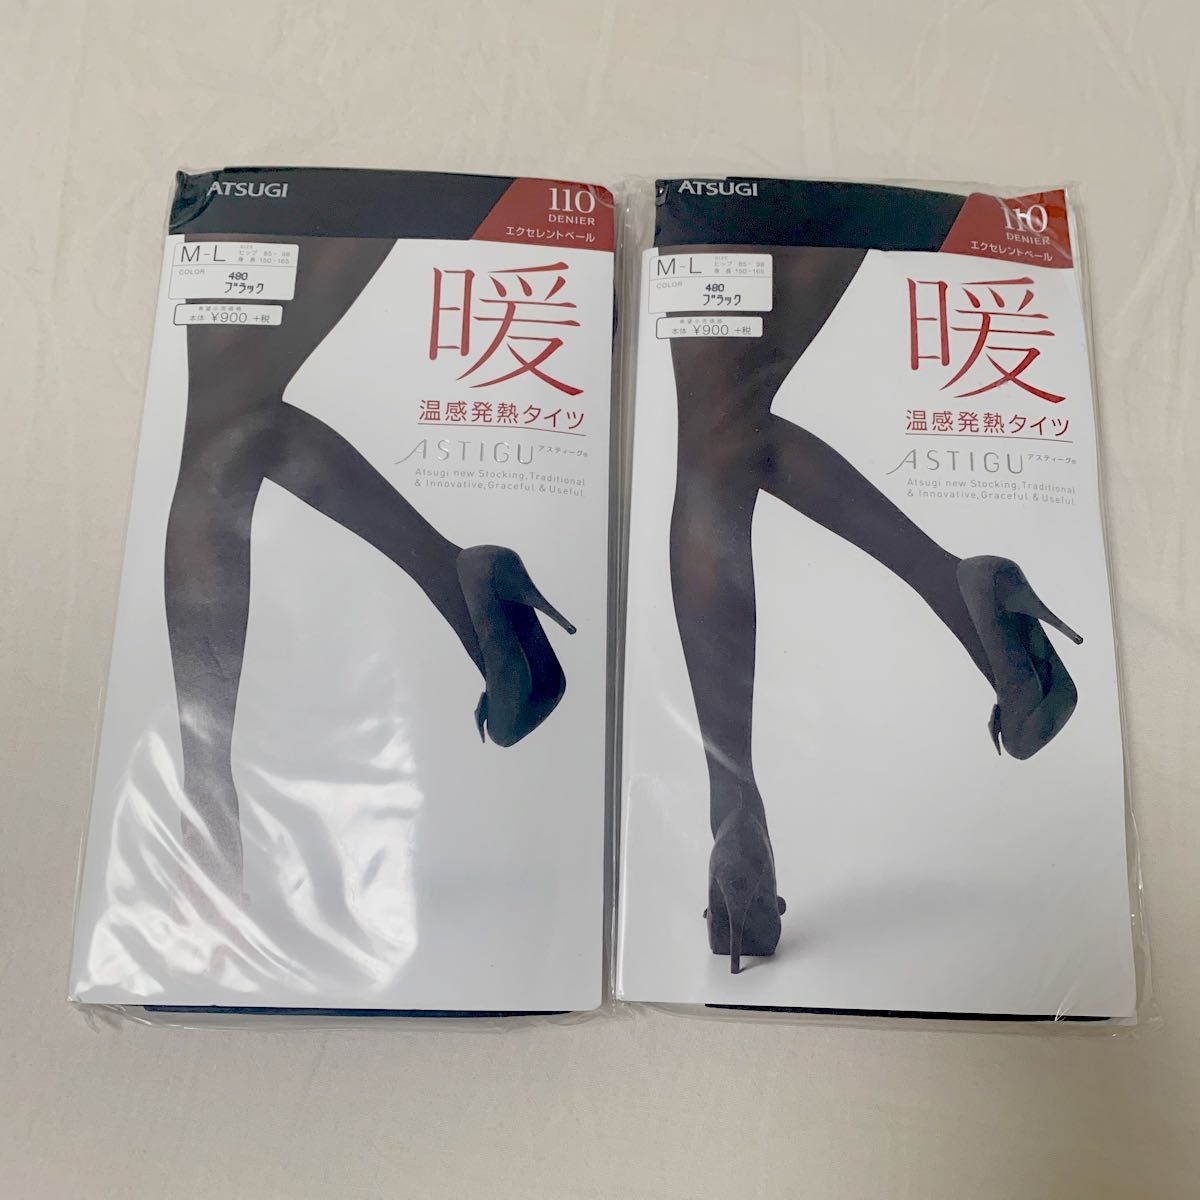 ATSUGI アツギ 暖 温感発熱タイツ 110デニール ブラック M〜L 2足セット